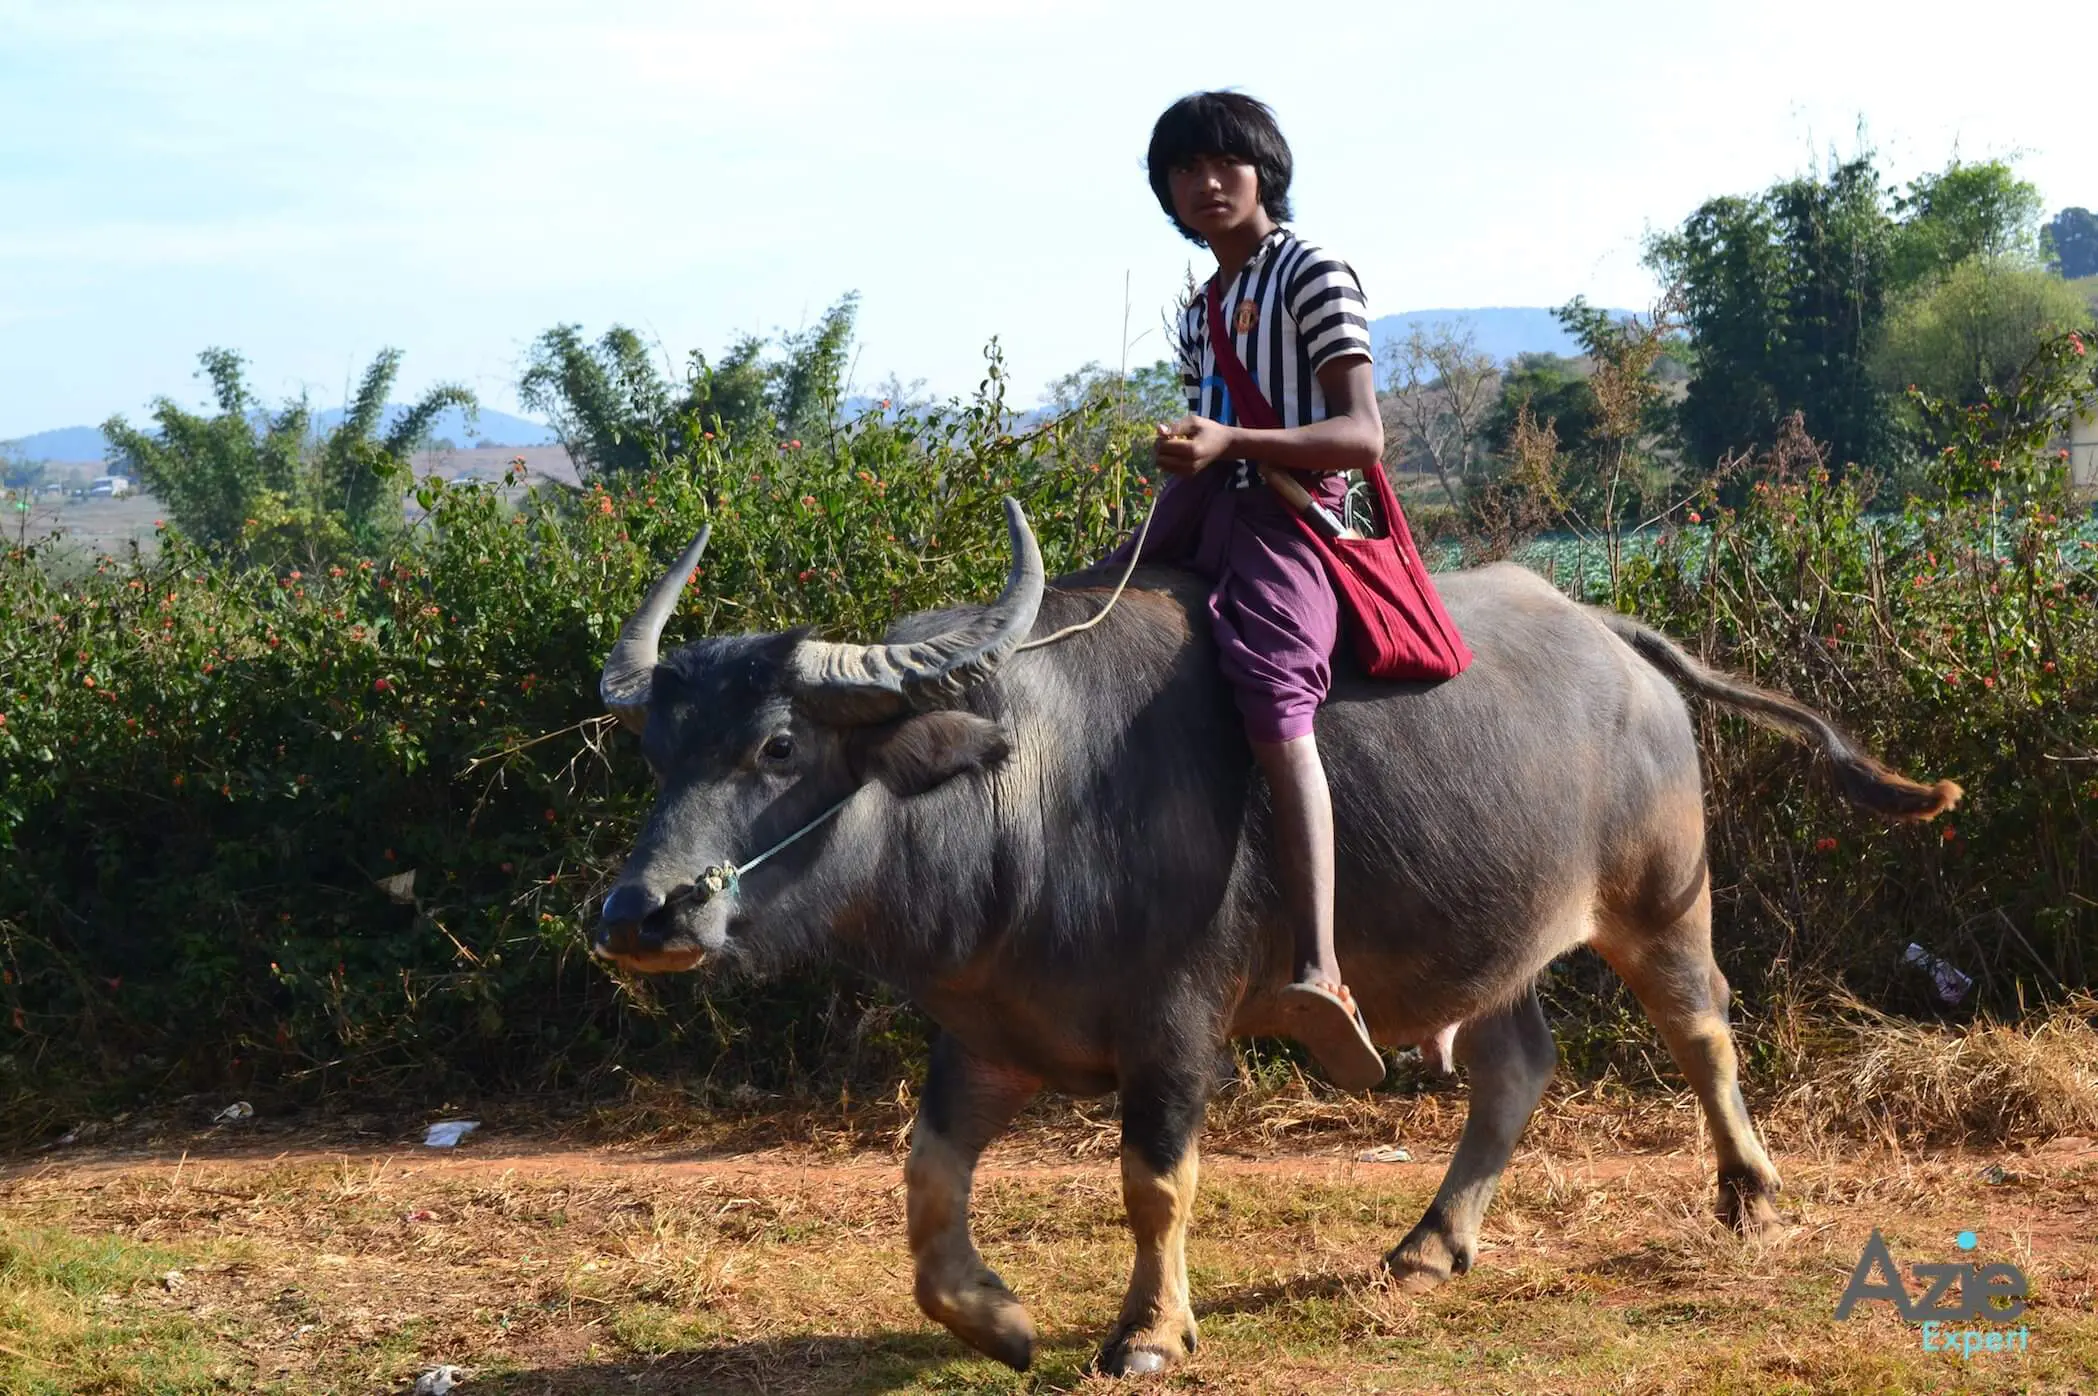 Inwoner van Kalaw in Myanmar